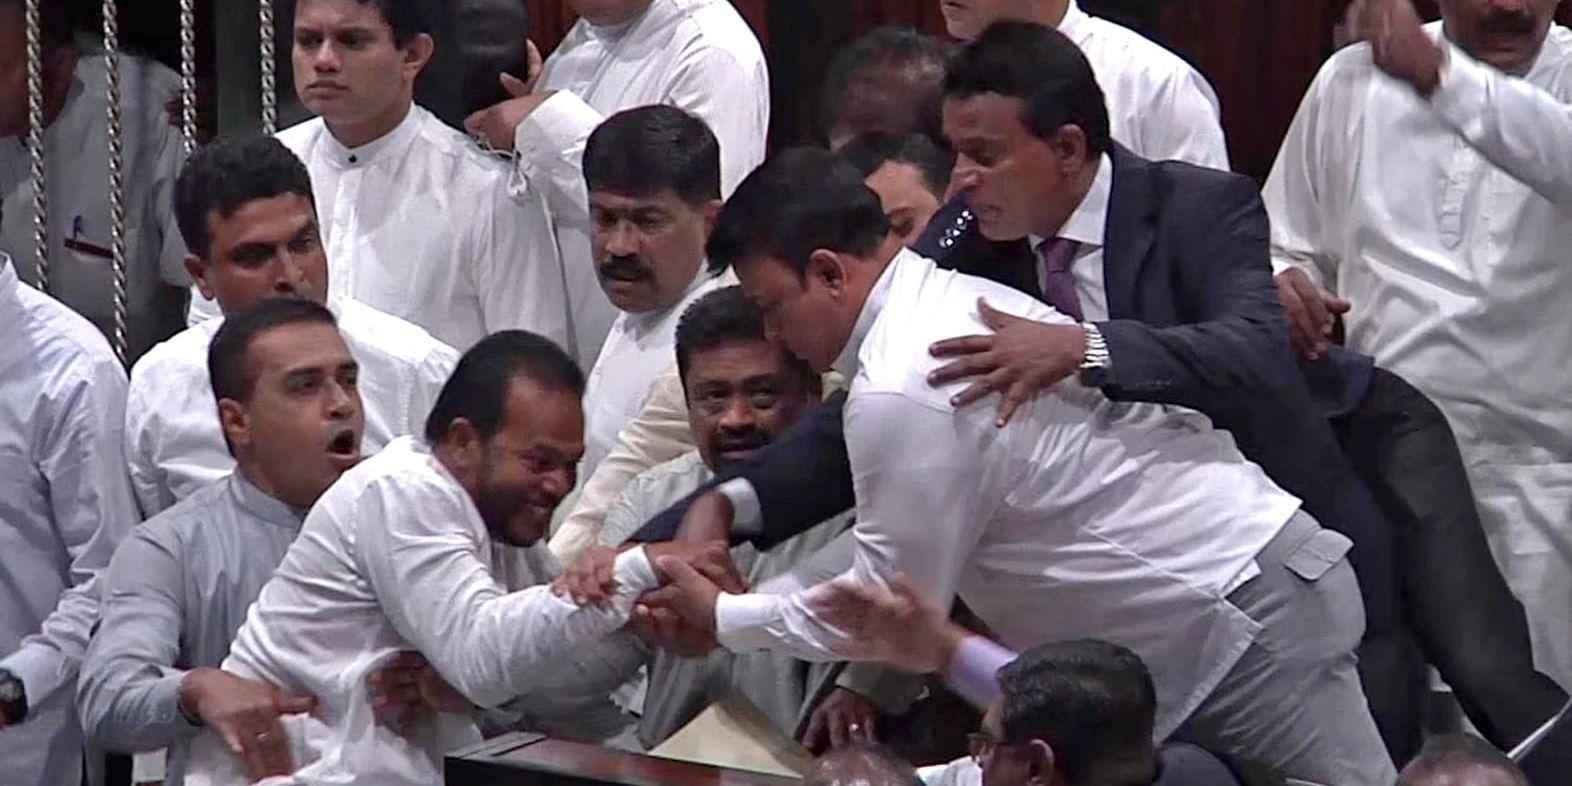 Ledamöter i Sri Lankas parlament i handgemäng.